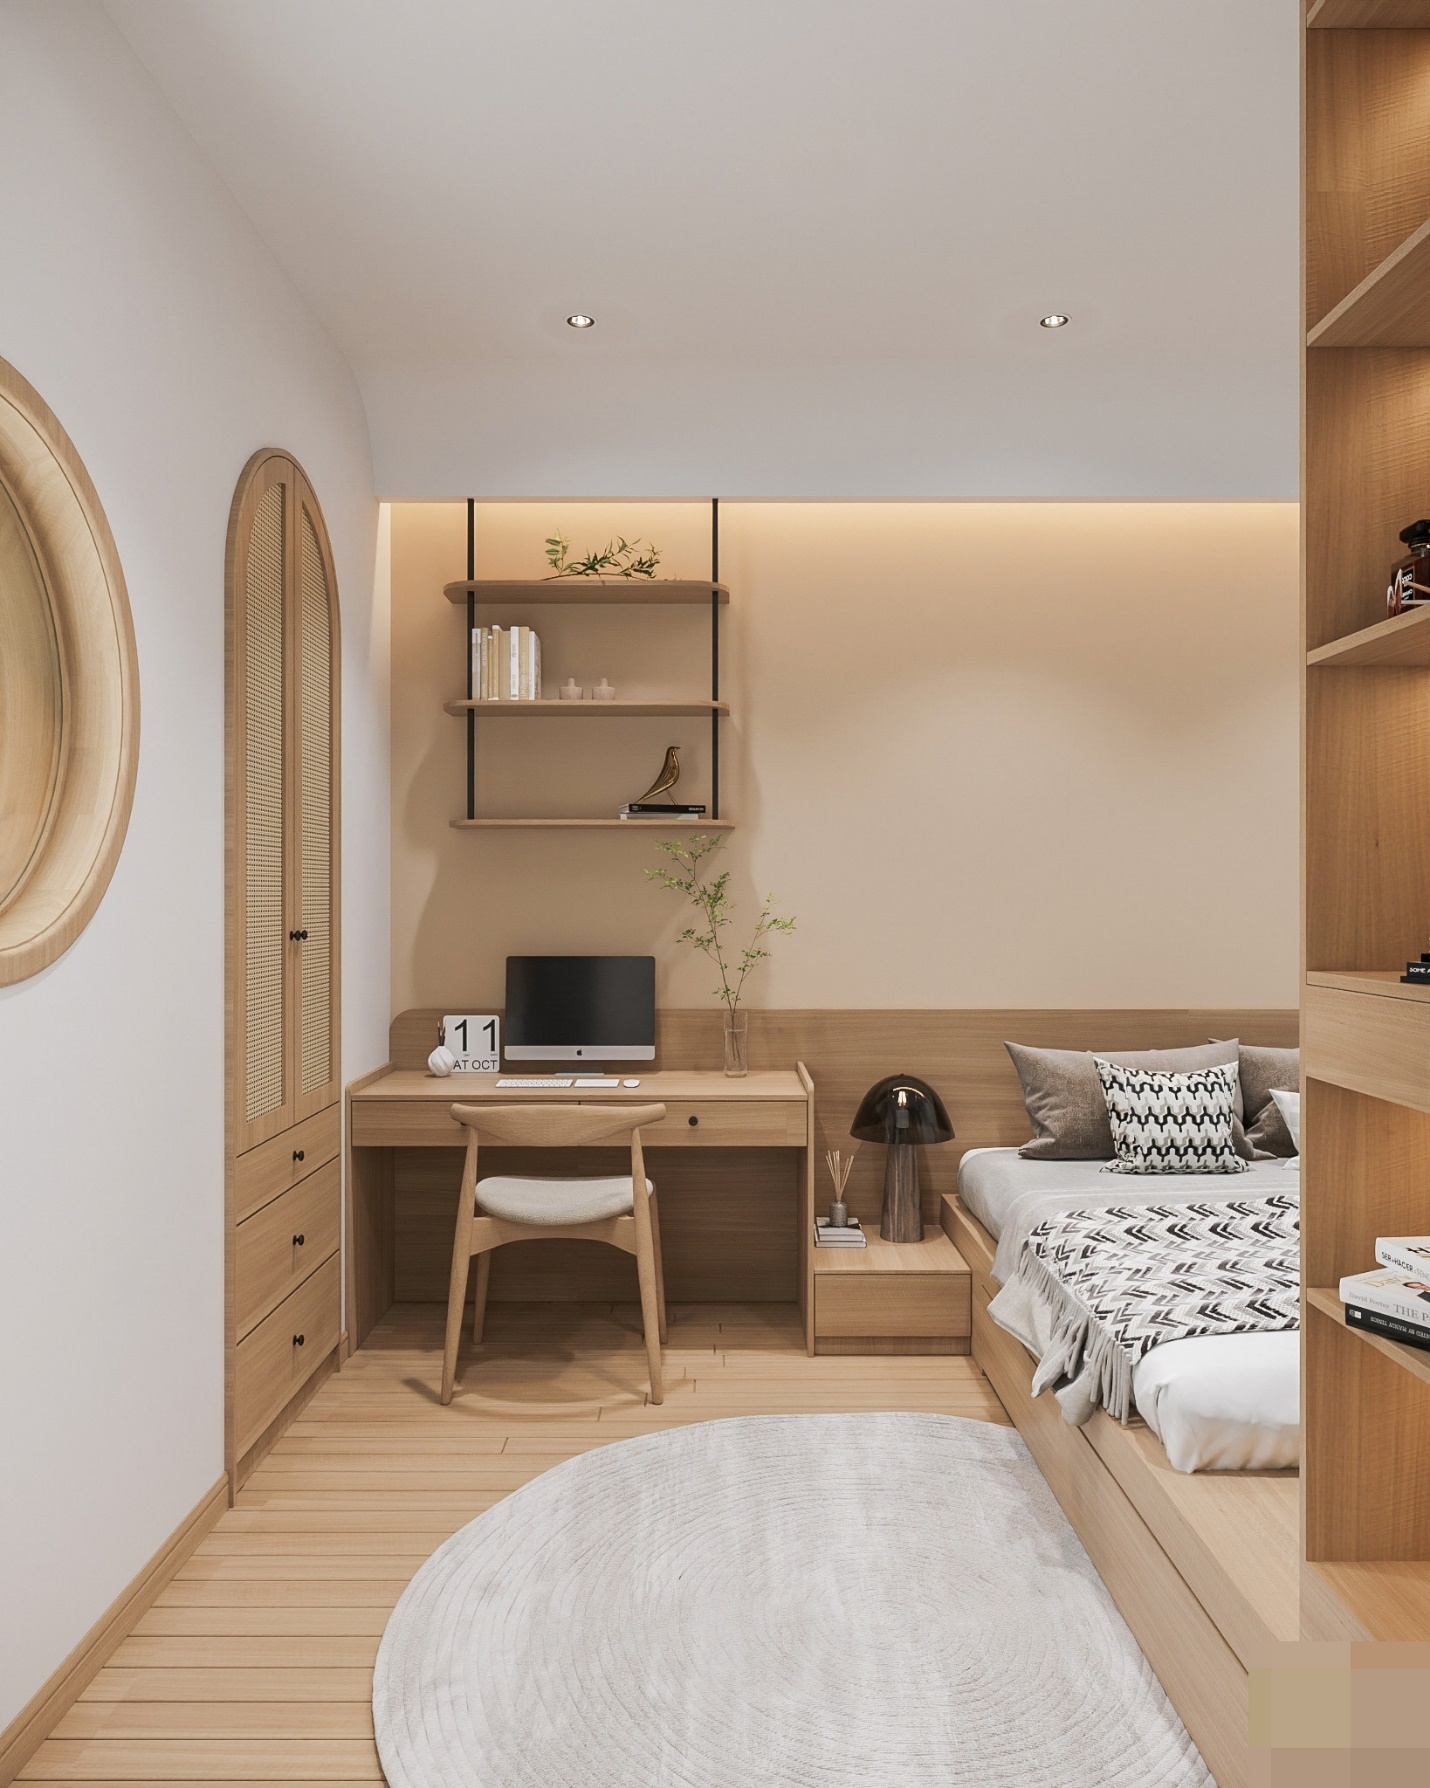 Thiết kế căn hộ 45m2 theo phong cách tối giản của Nhật Bản